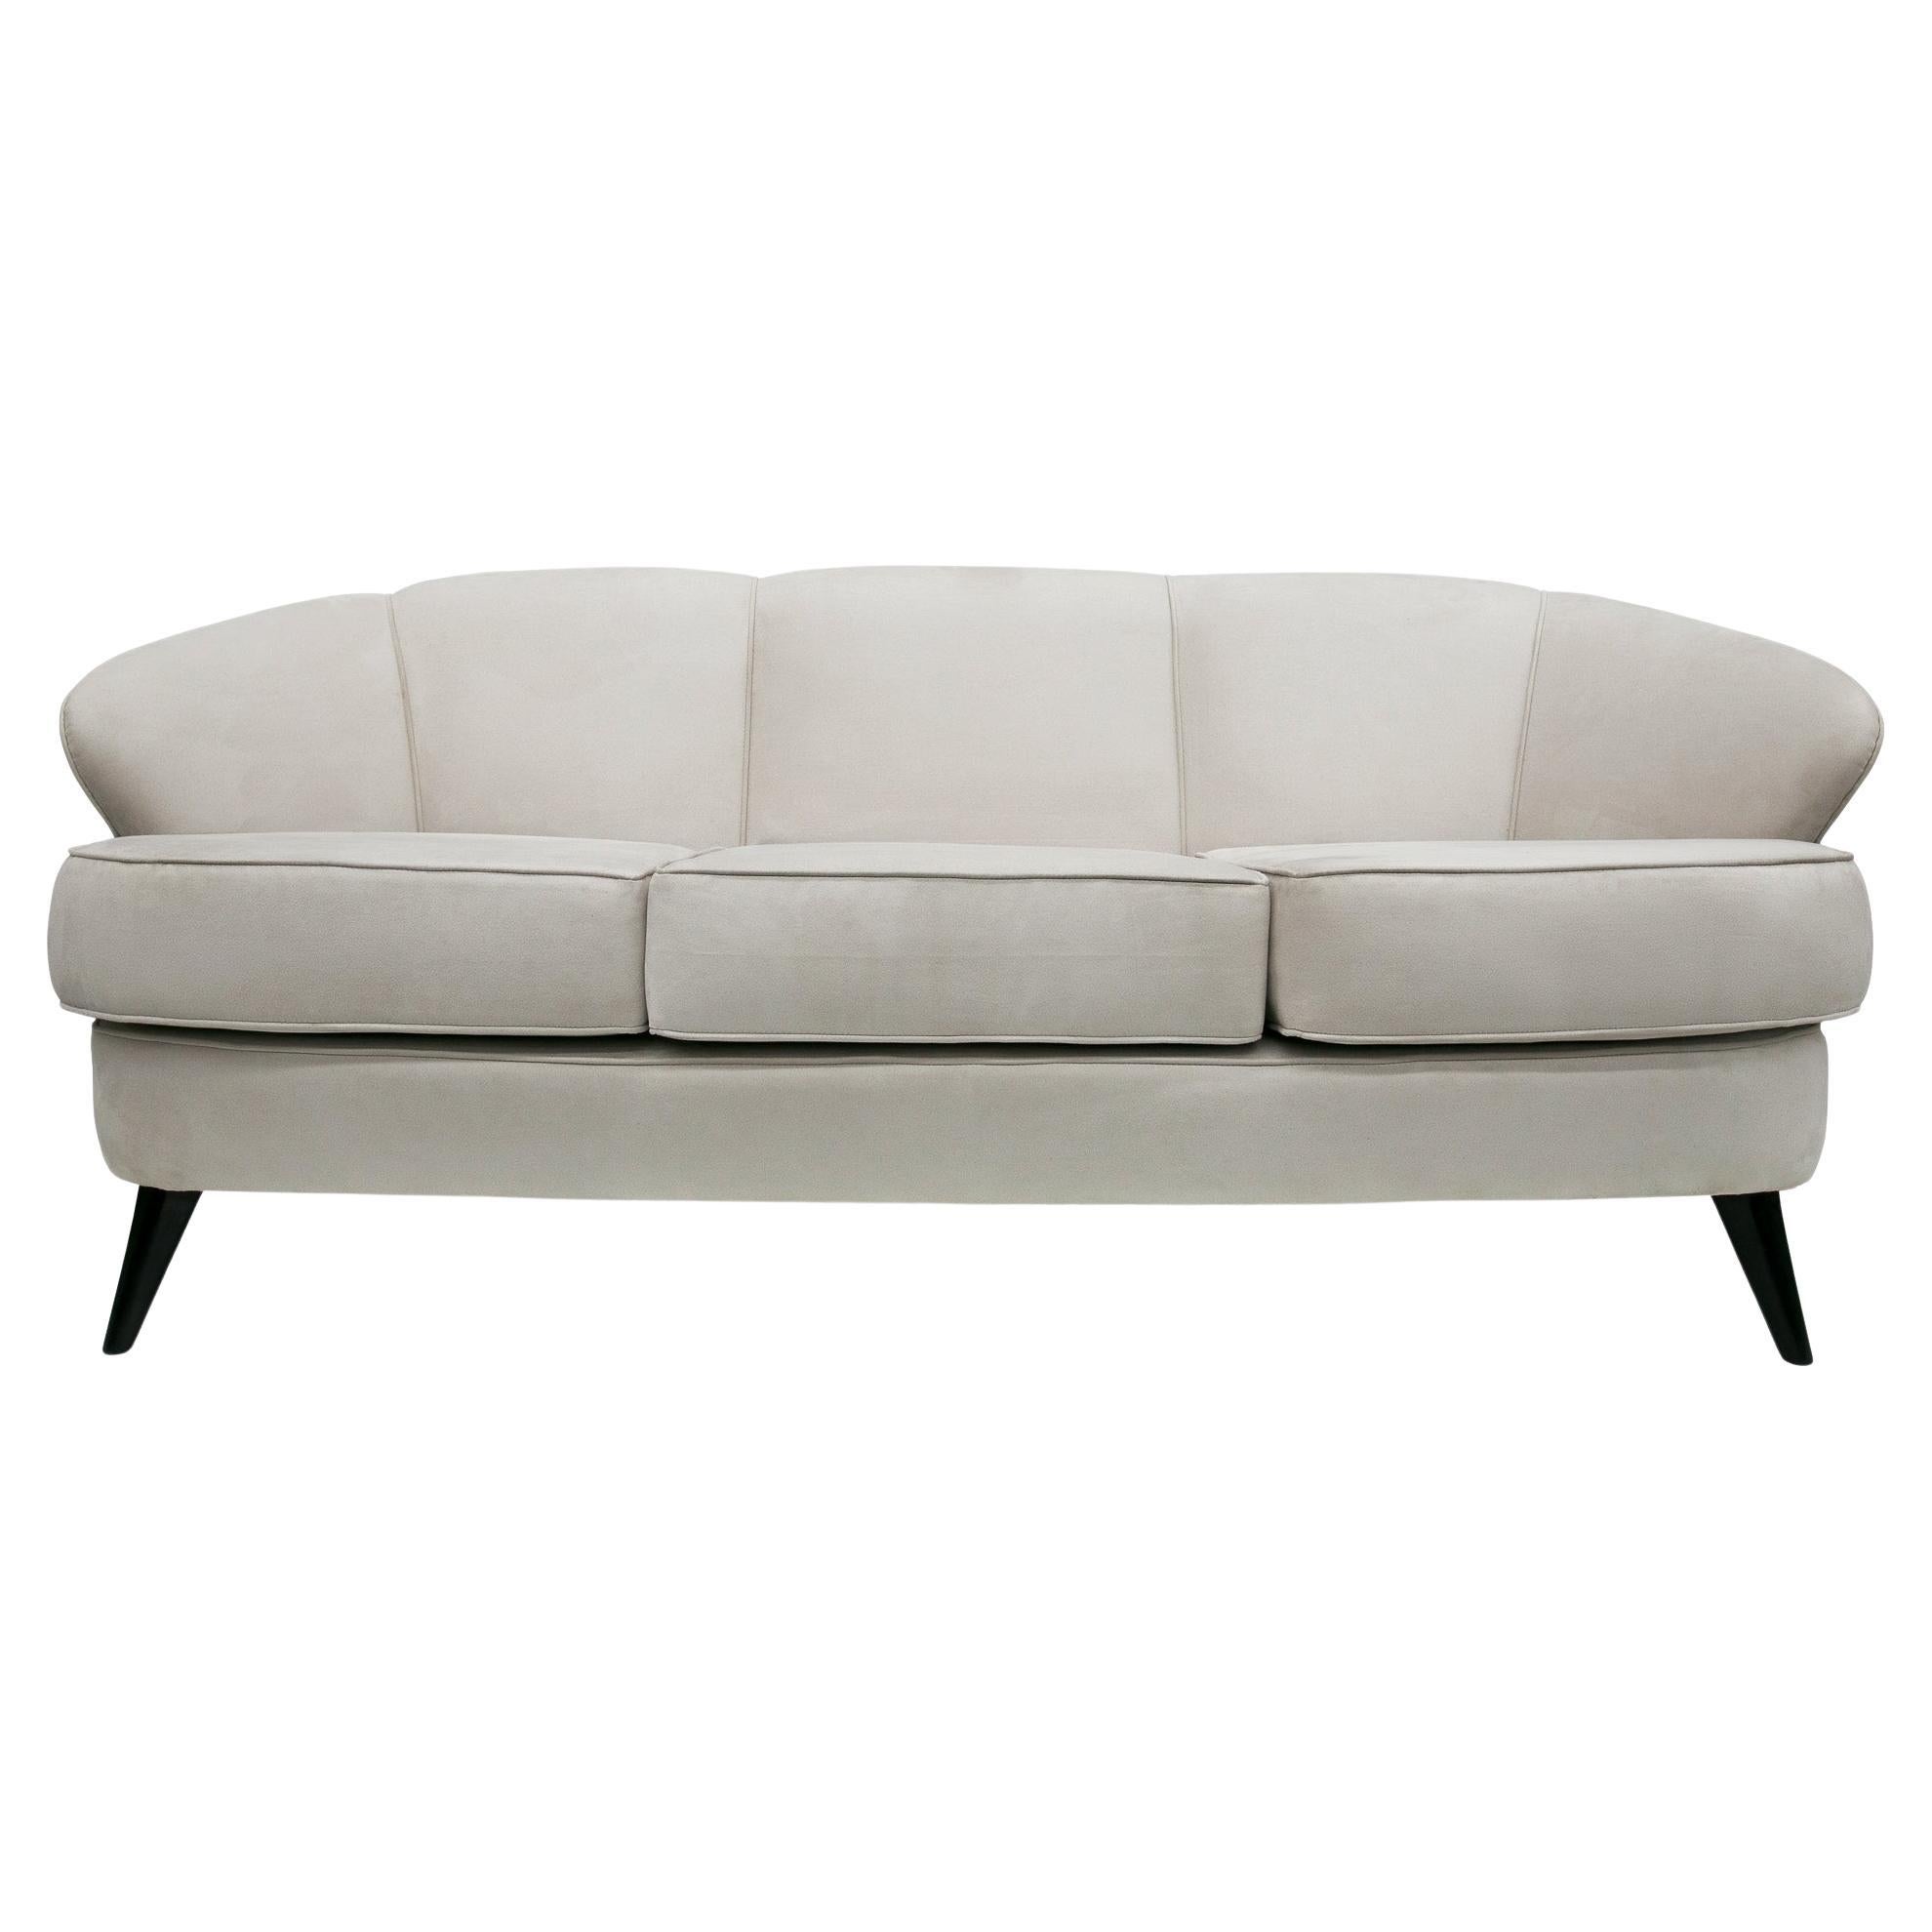 Disponible dès maintenant, ce canapé moderne brésilien conçu par Joaquim Tenreiro dans les années 60 est magnifique ! Le modèle s'appelle 